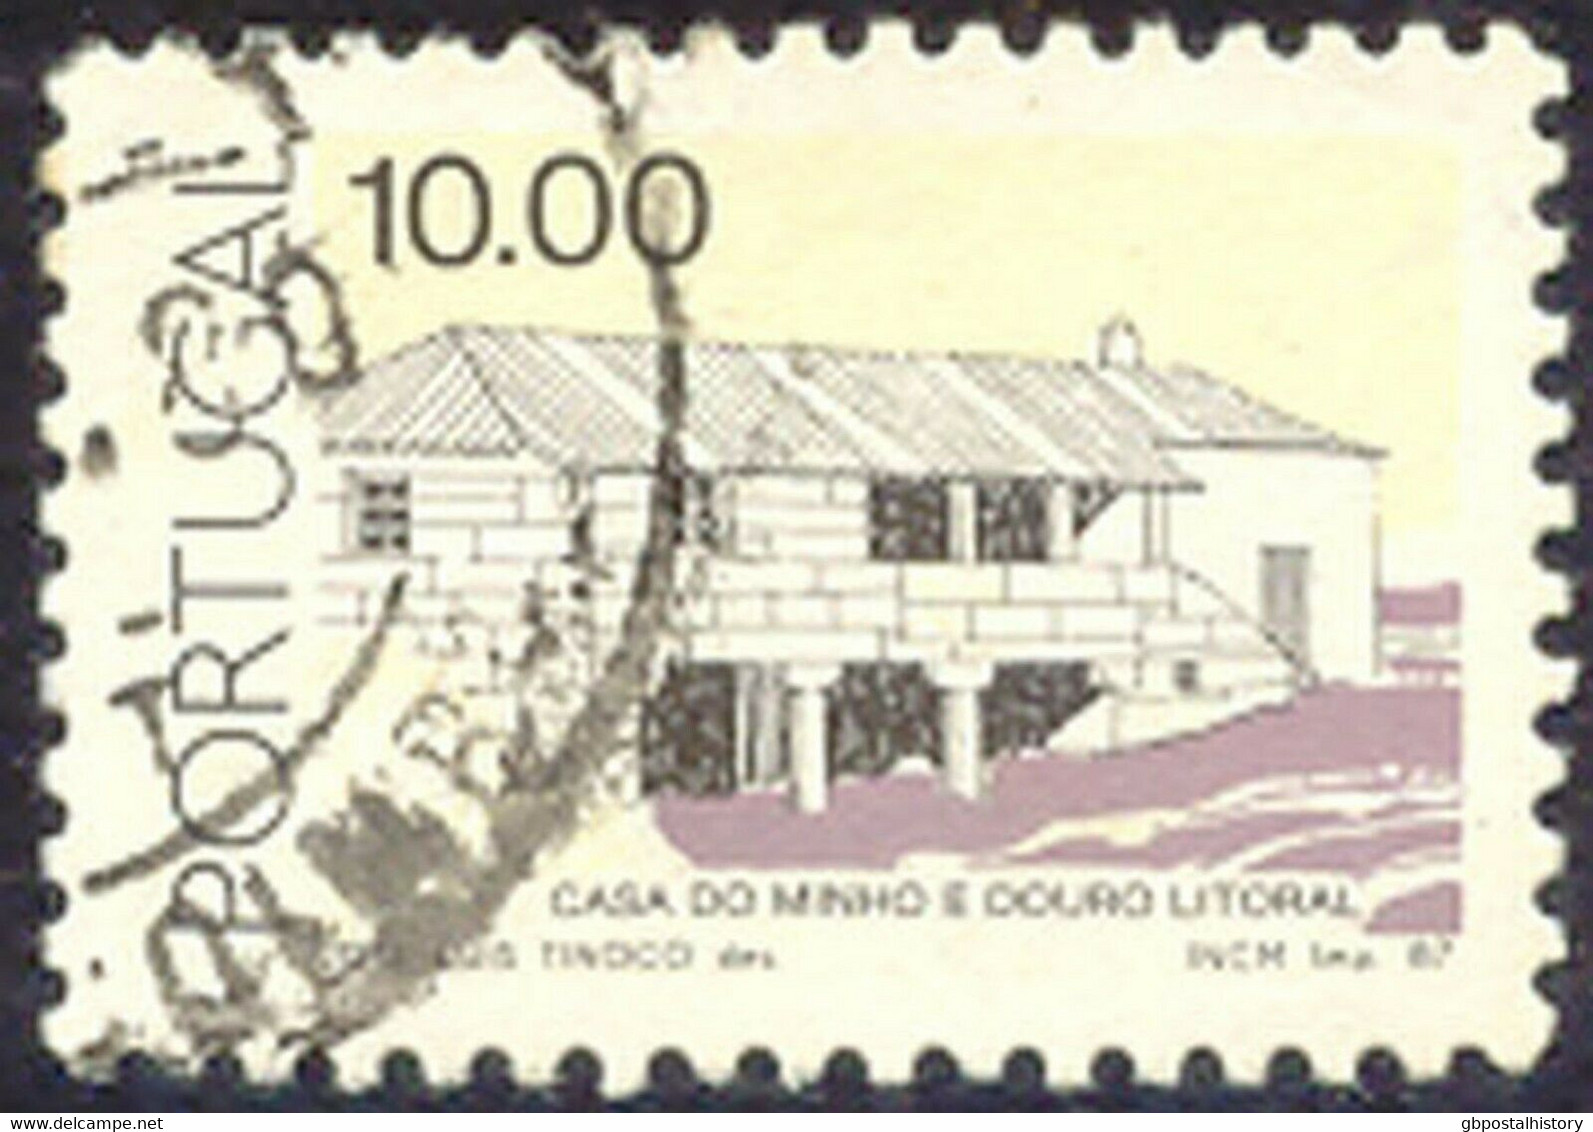 PORTUGAL 1987 10.00 (E.) Landhaus Minho Und Douro Litoral Gest. MISSING COLOUR - Usado